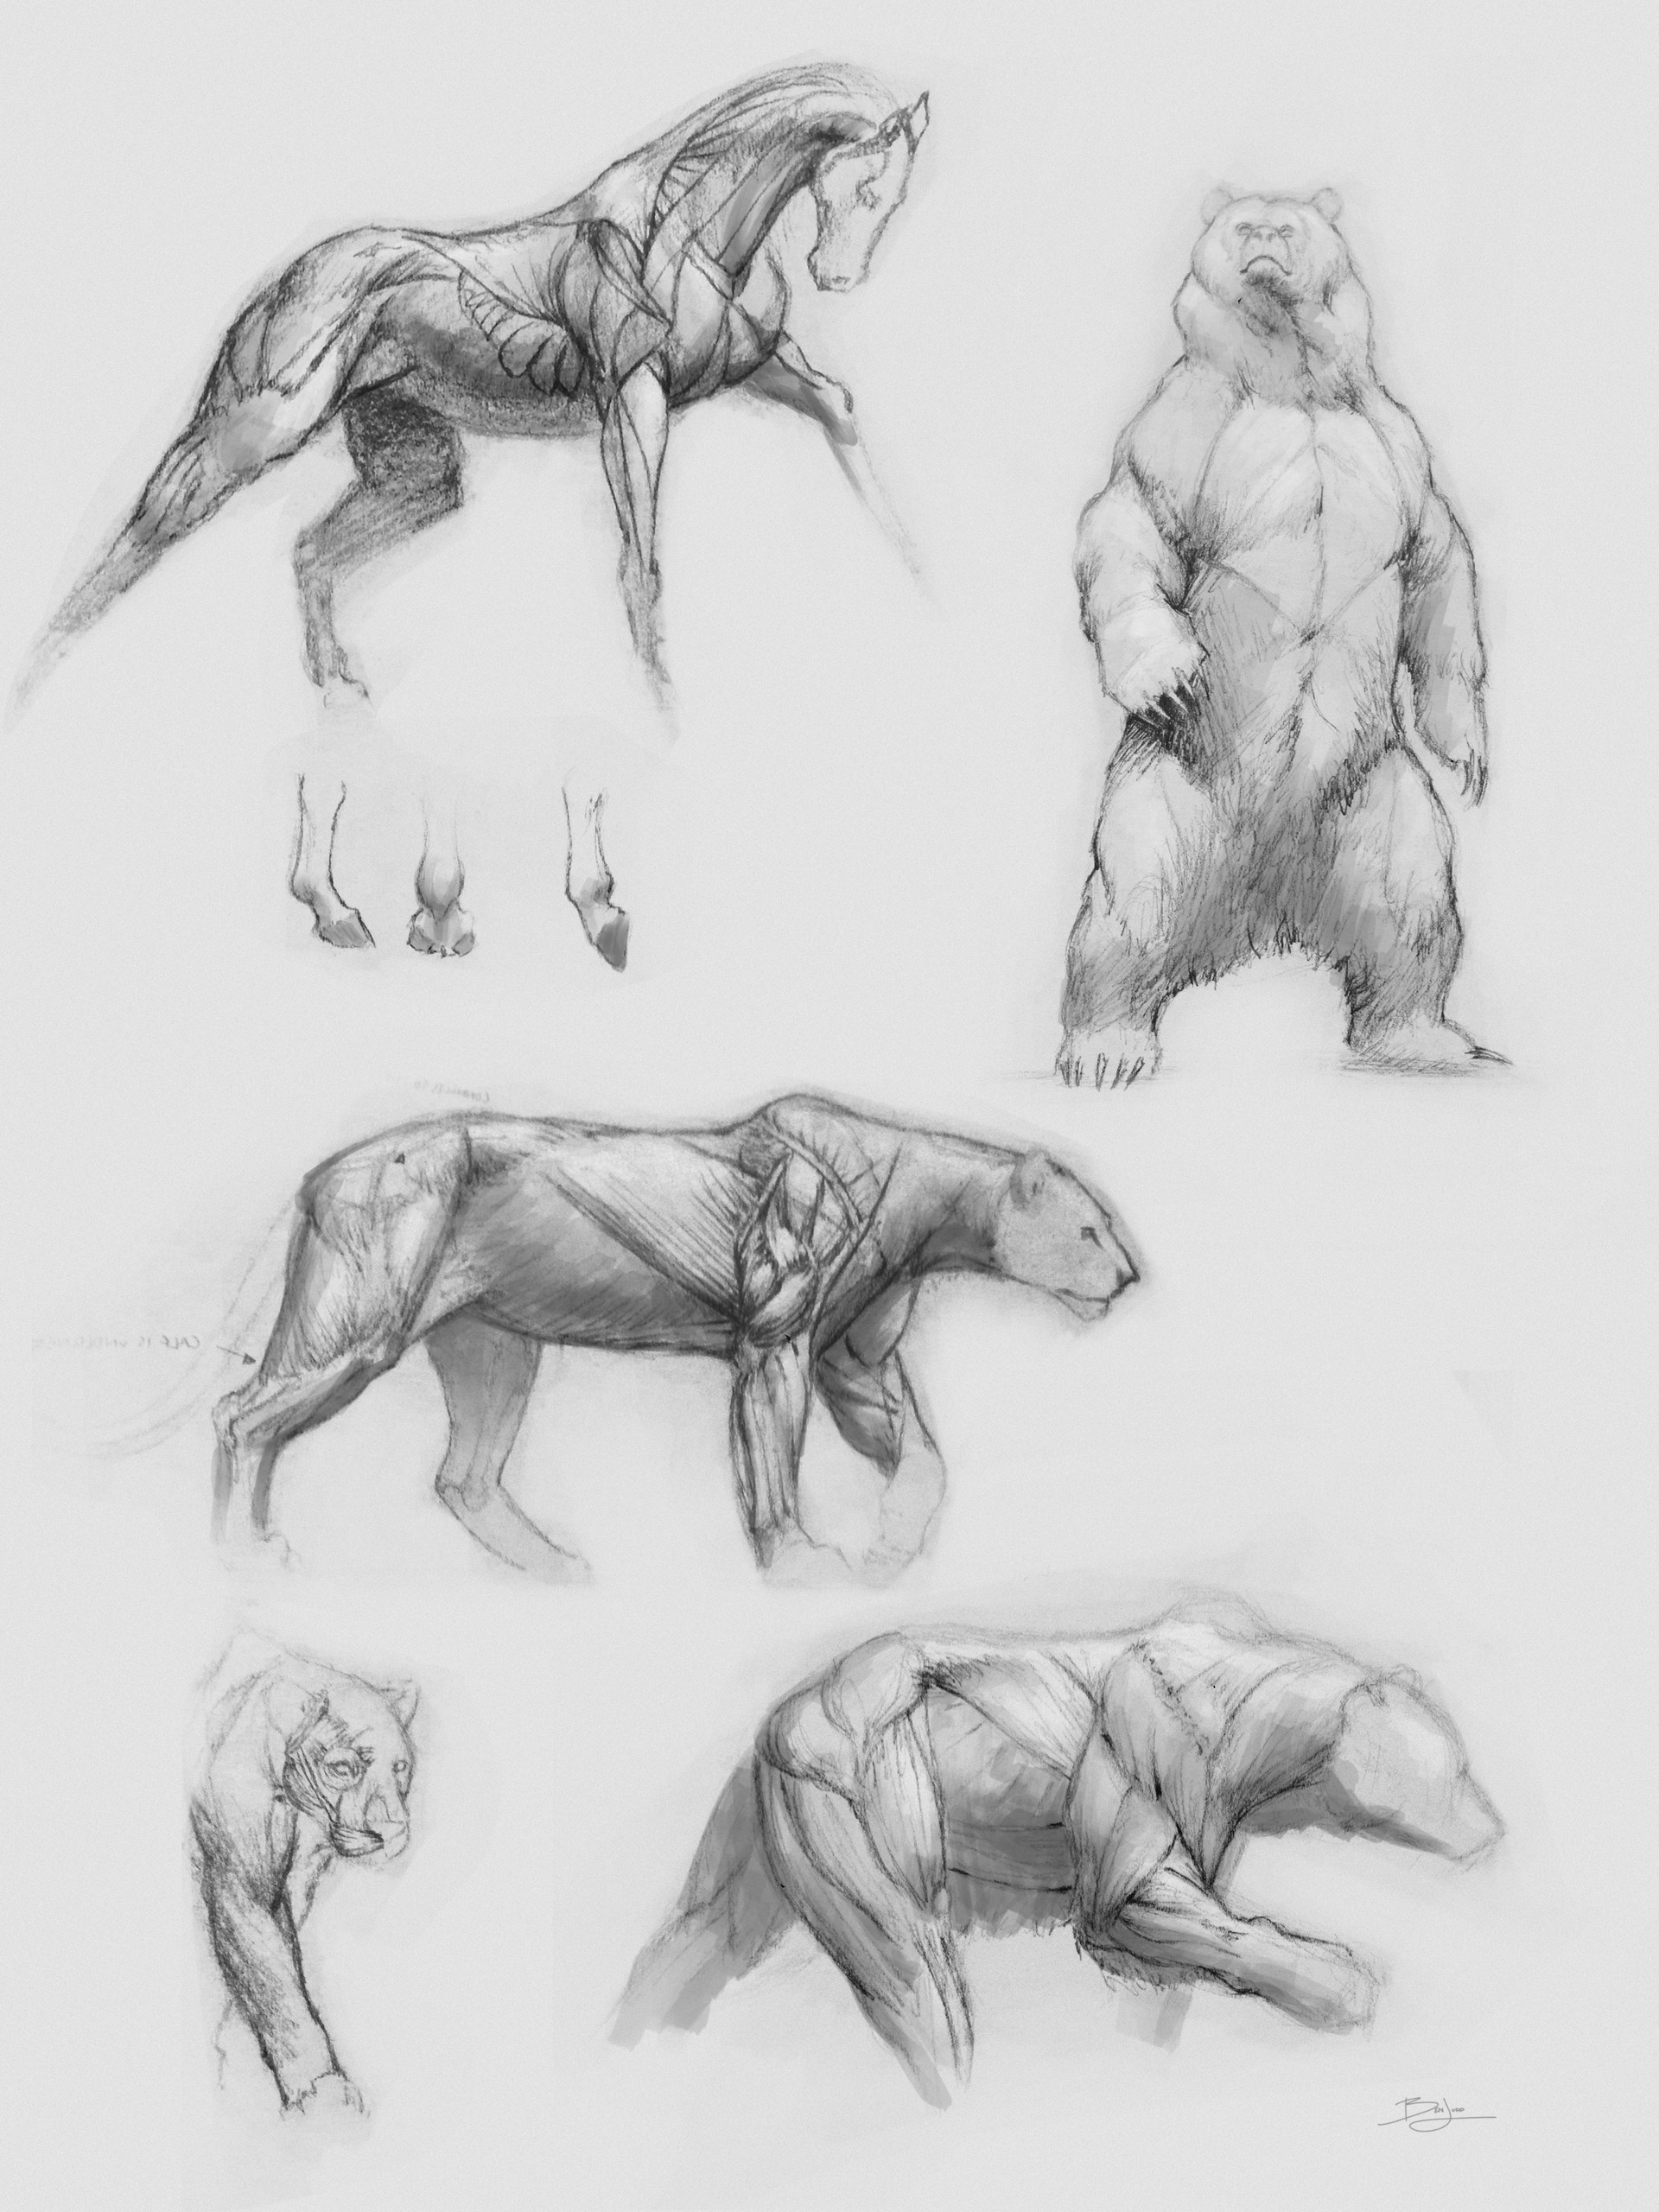 ArtStation - Animal anatomy sketches